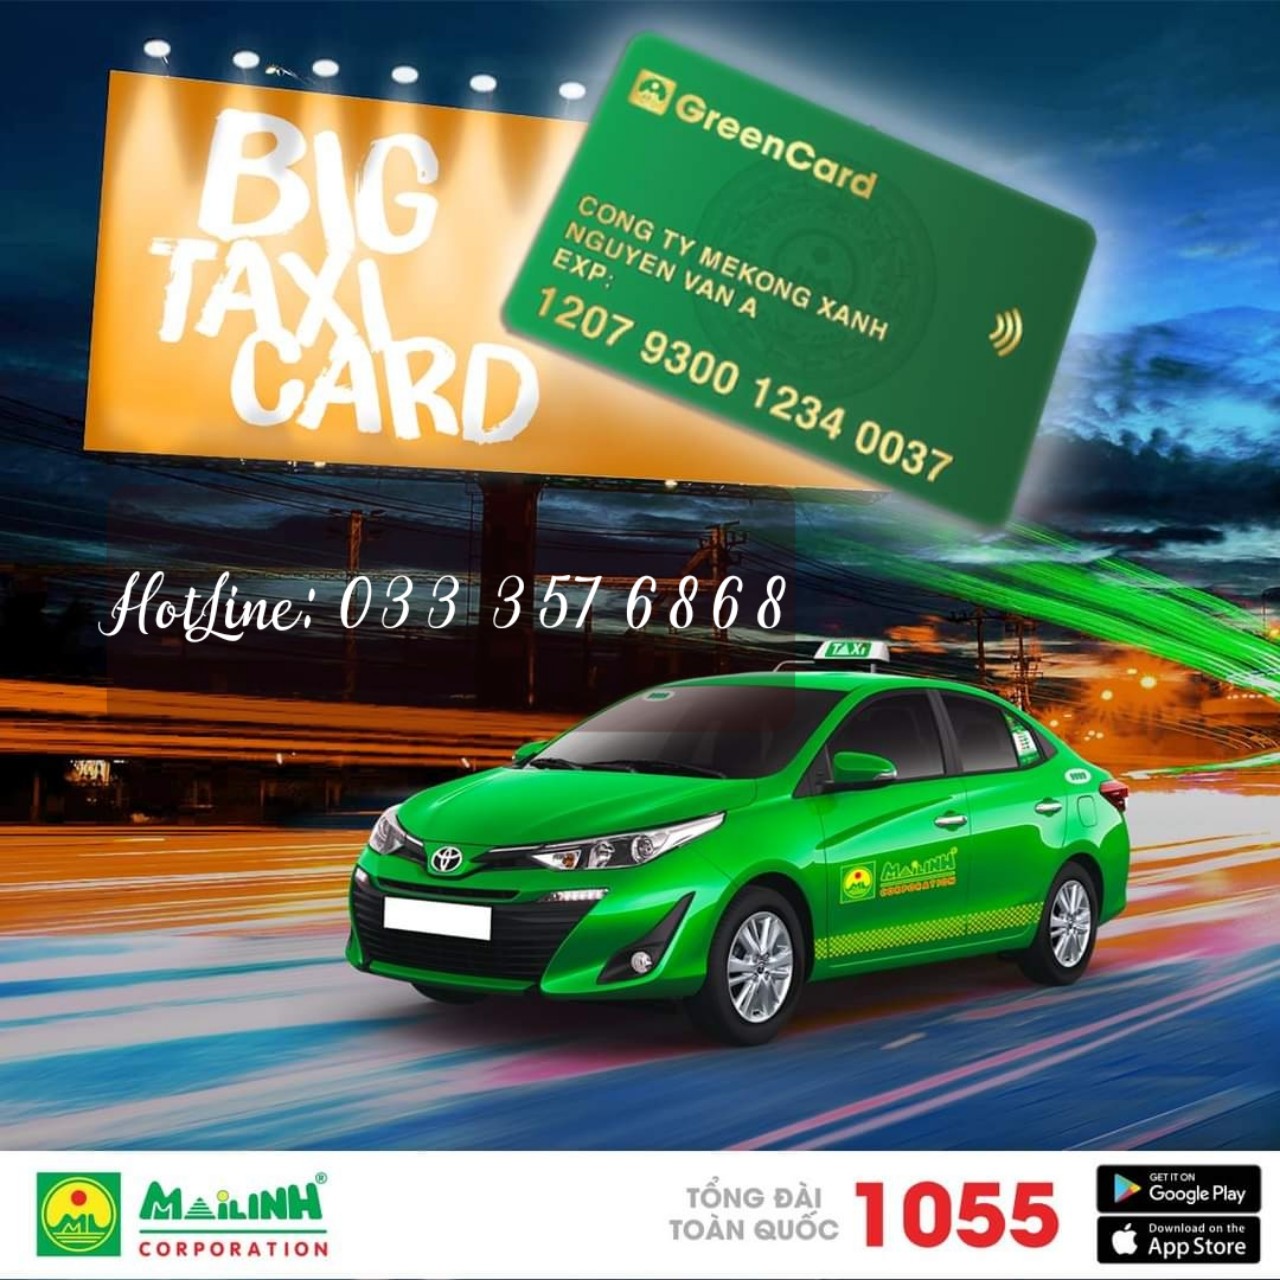 Thẻ GreenCard đi taxi không cần phải lo !!!